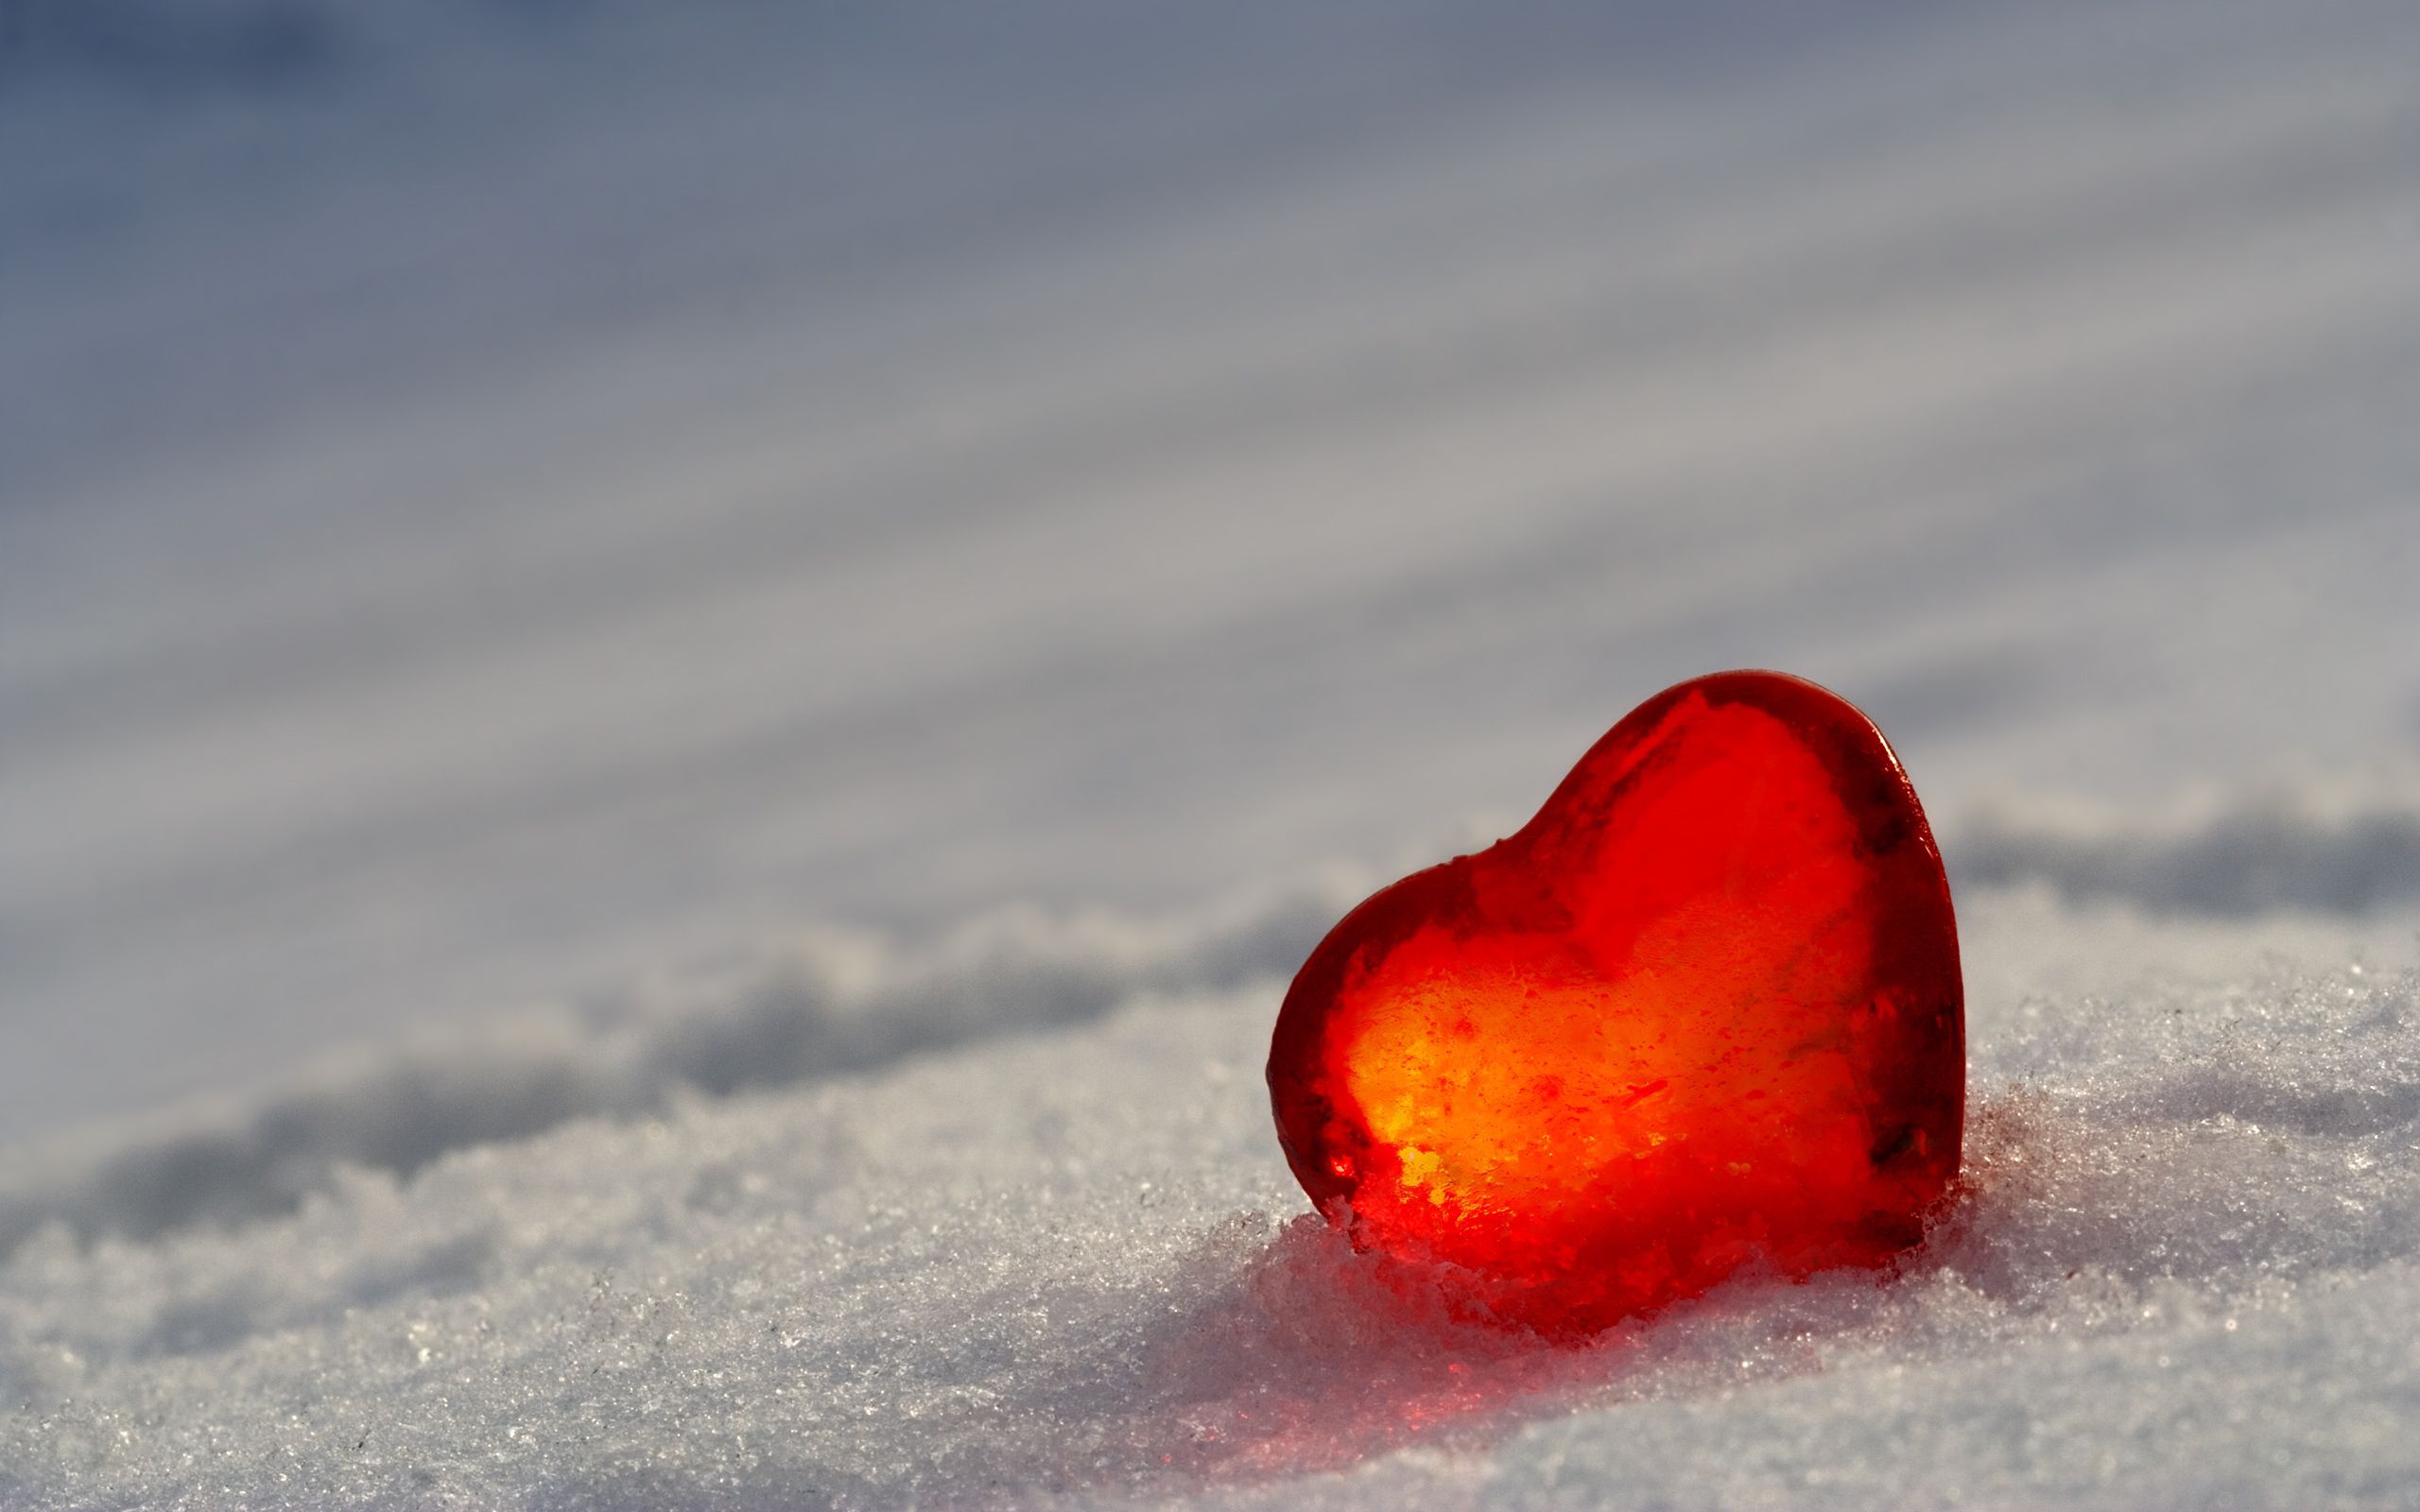 Сердце на снегу